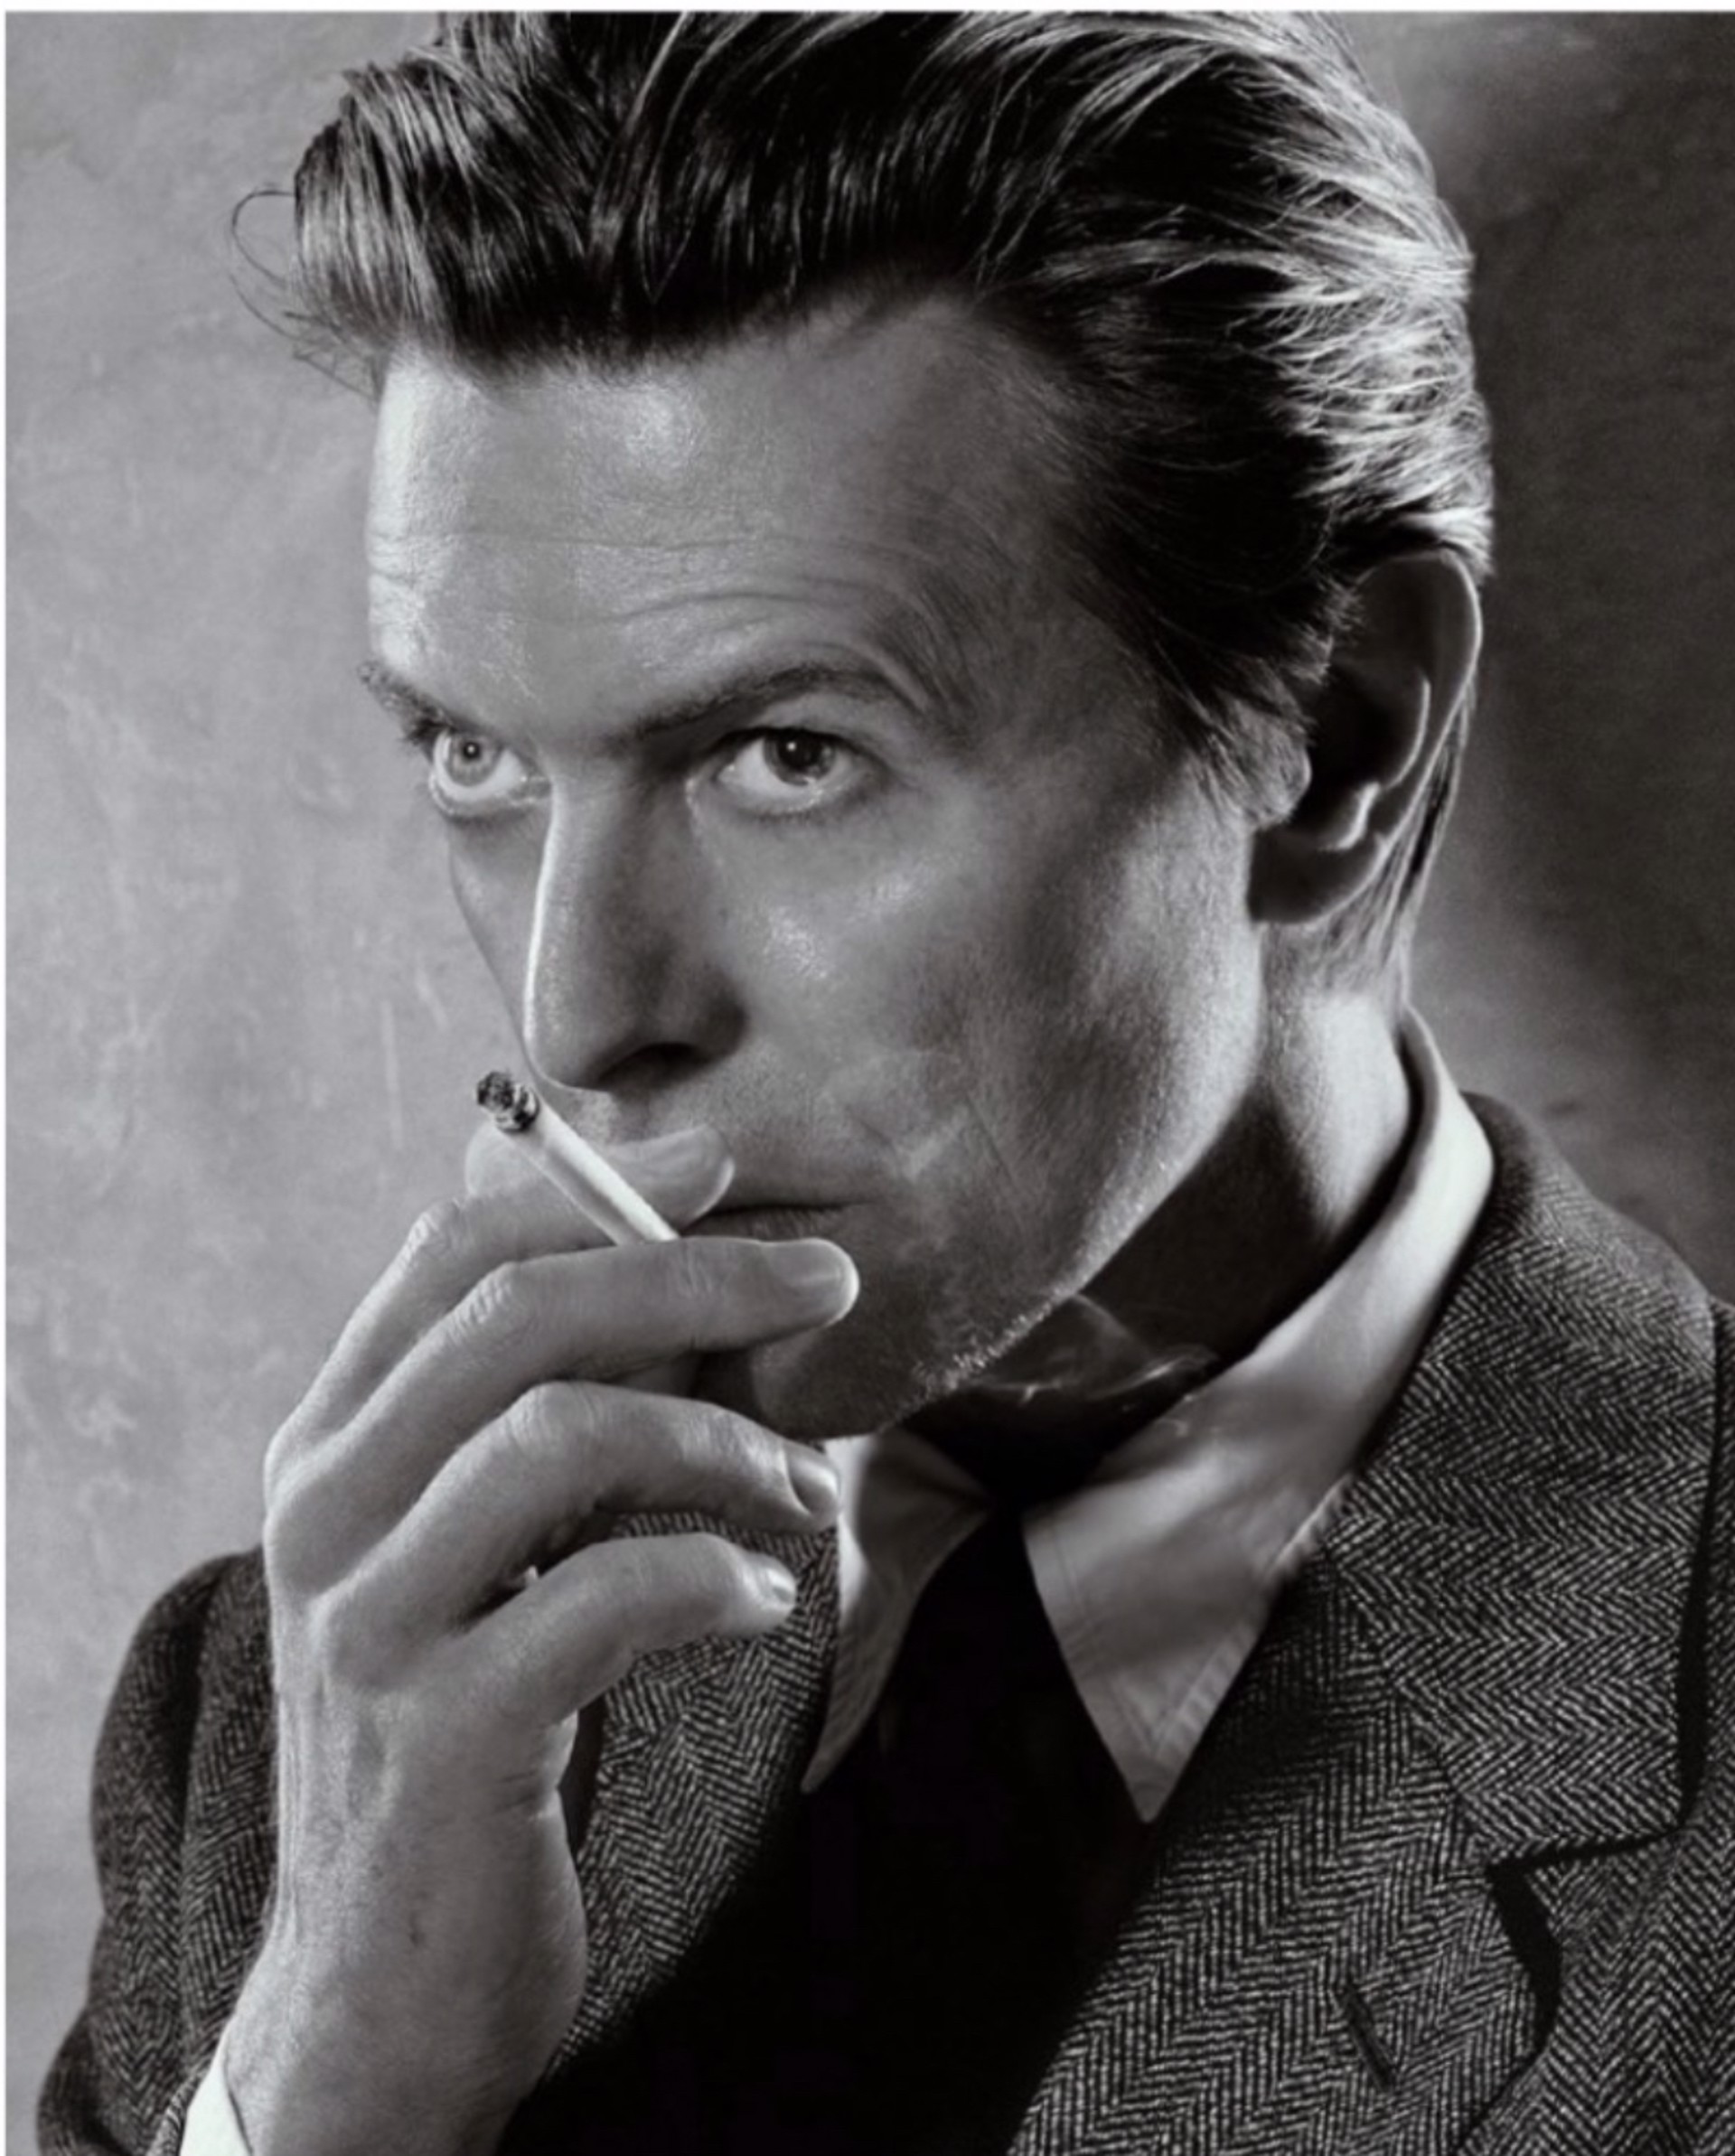 Bowie, Smoking- BW by Markus Klinko